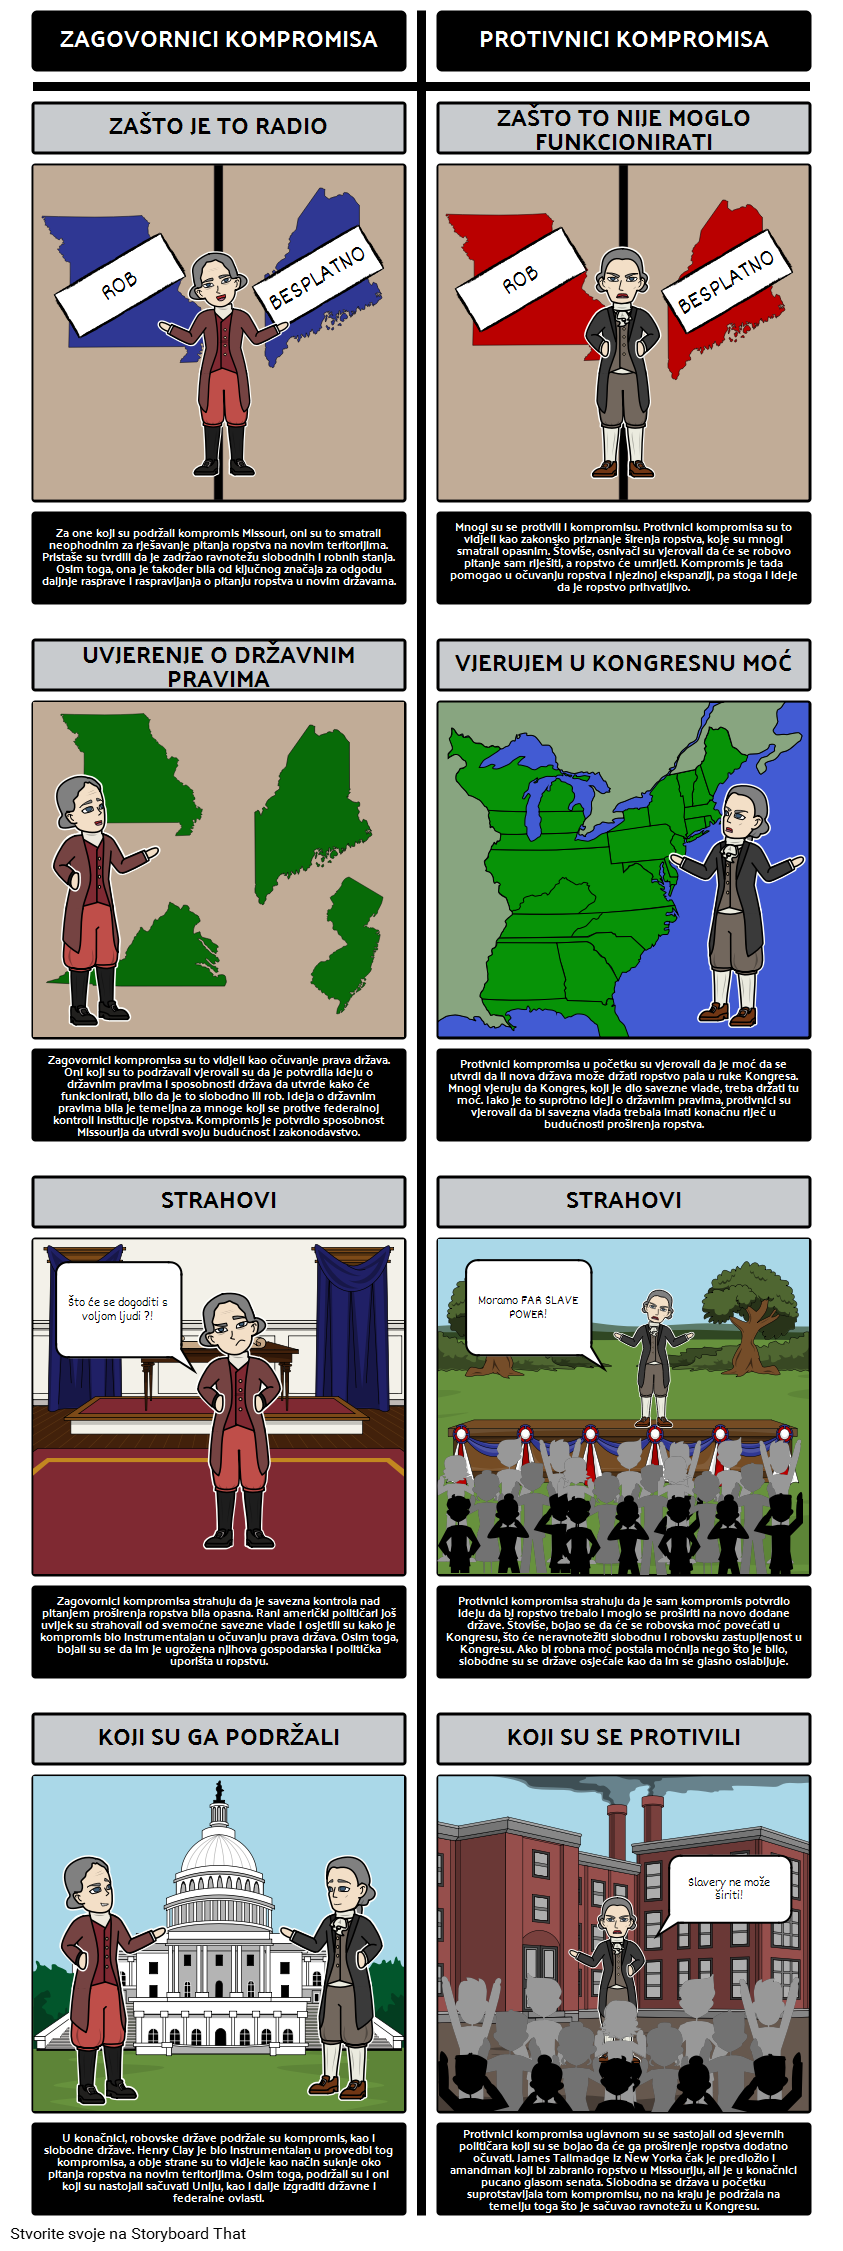 Kompromis Missouri iz 1820. godine - predlagatelji i protivnici